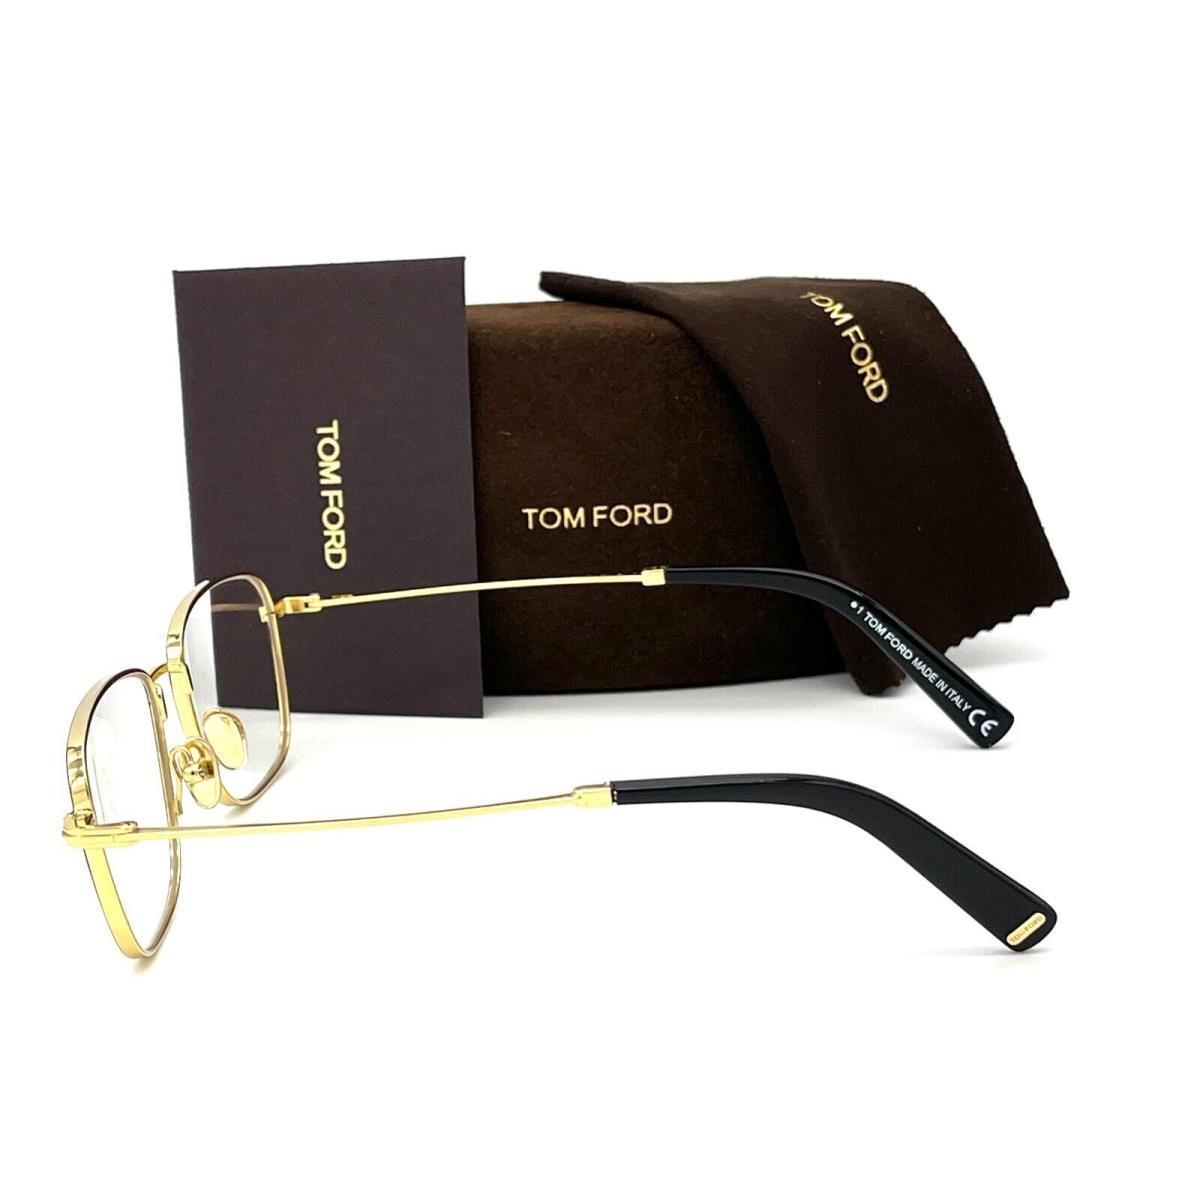 Tom Ford eyeglasses  - Black Gold Frame, Blue Block Lens 2